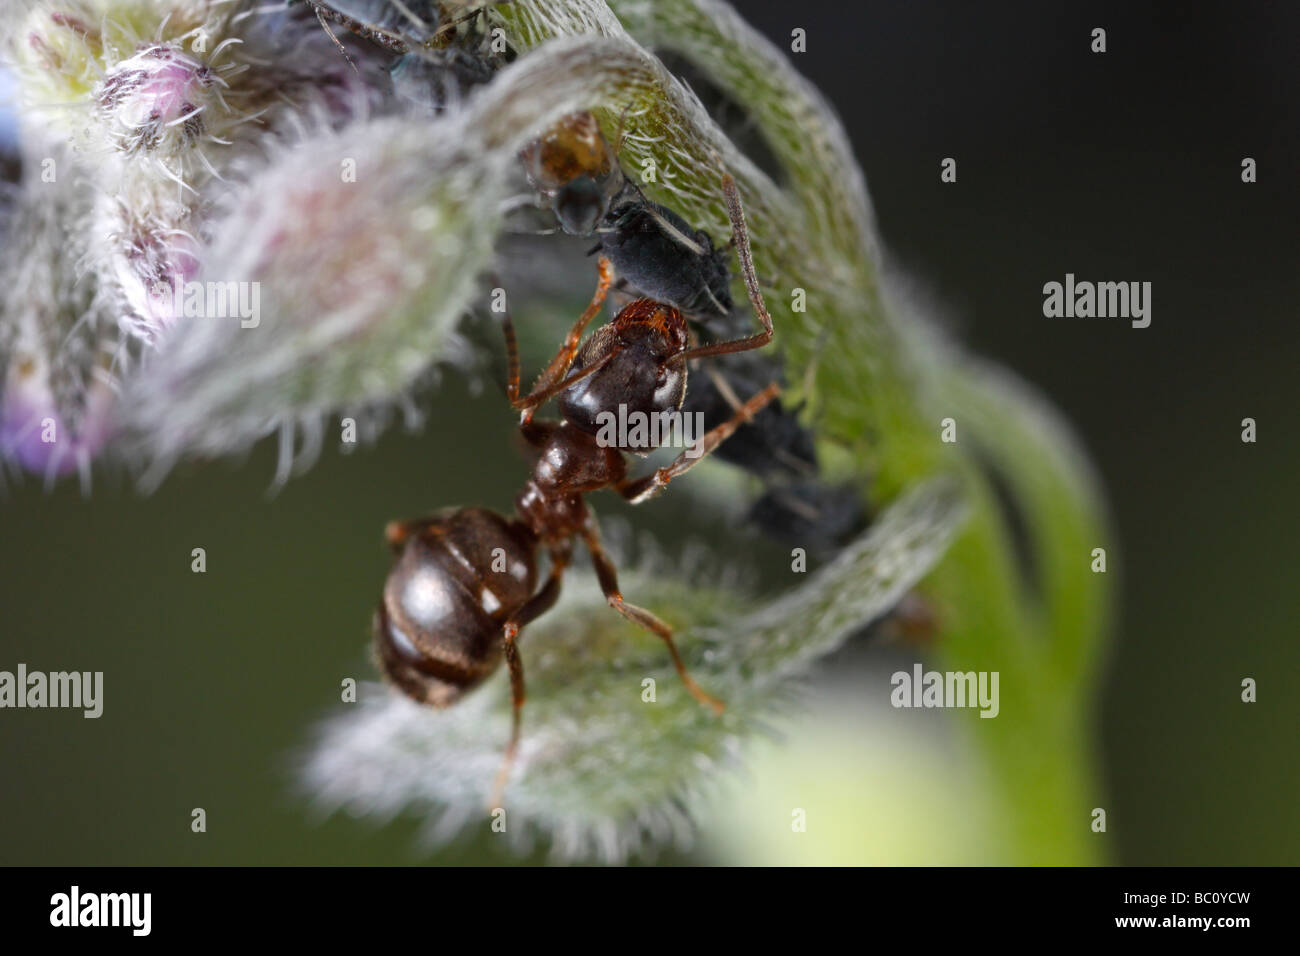 Lasius niger, il giardino nero ant e afidi. La formica è la mungitura afidi. Il fiore è un borragine o fiore a stella. Foto Stock